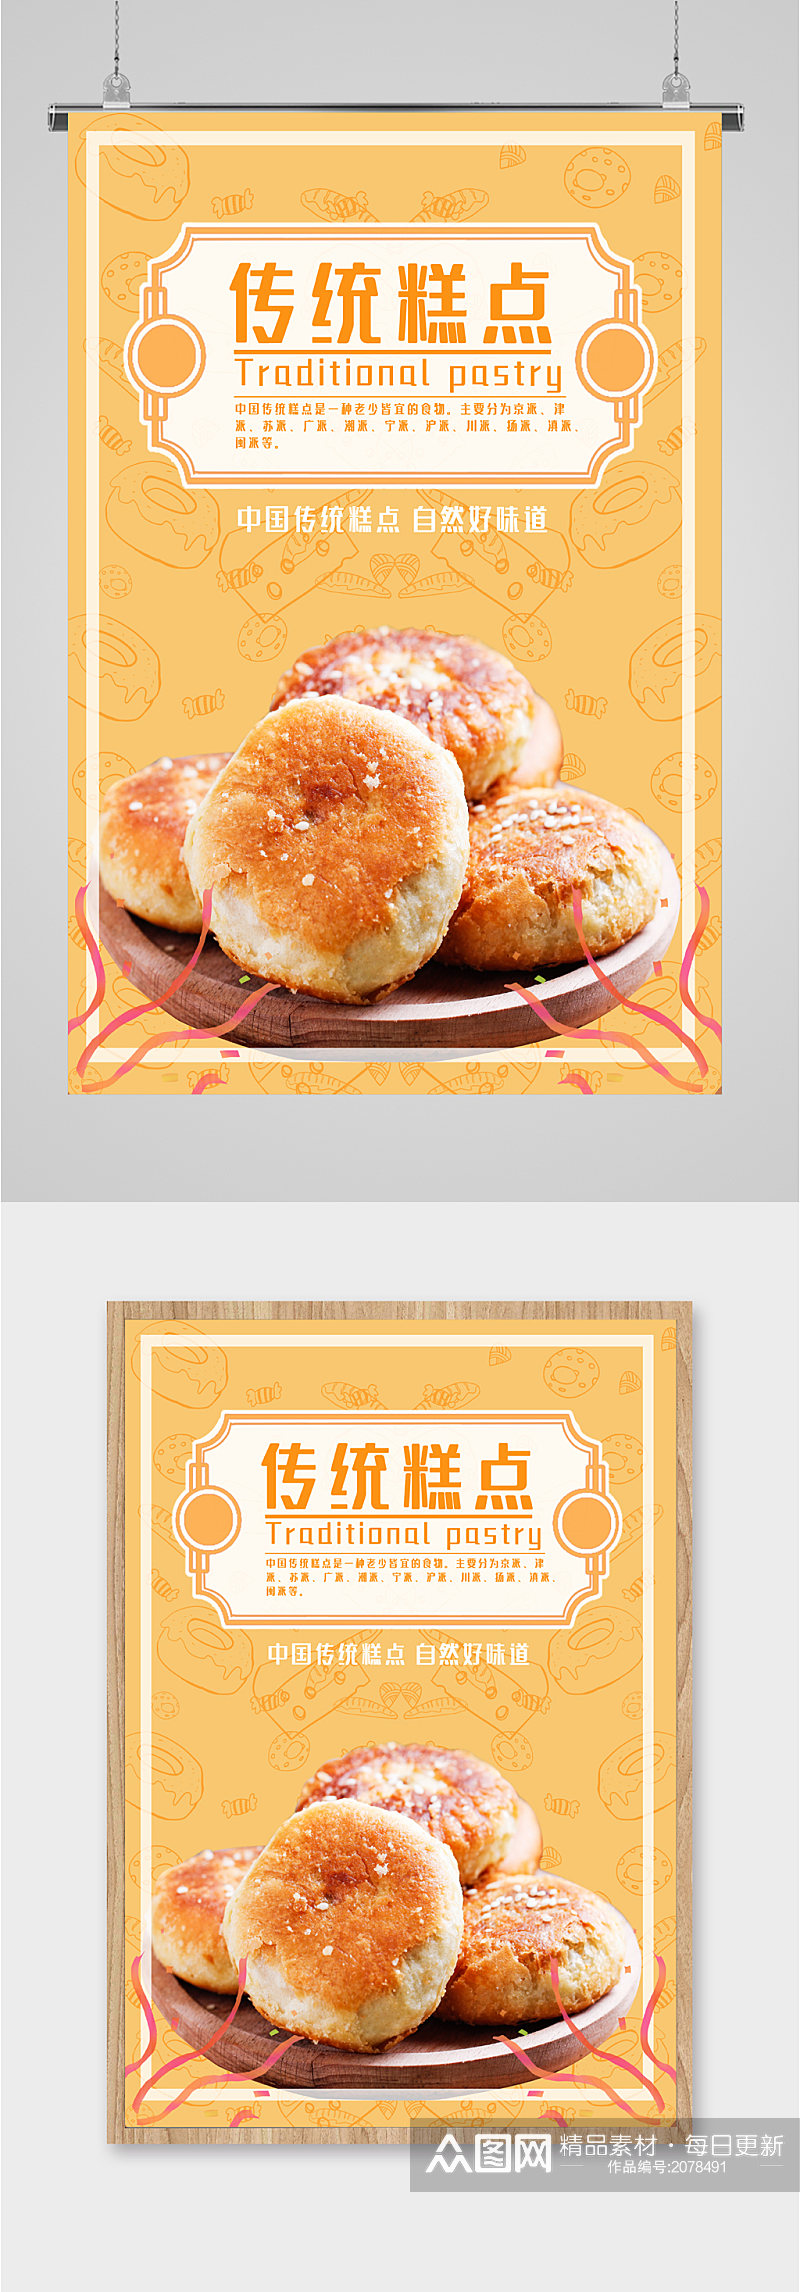 中国传统糕点海报素材